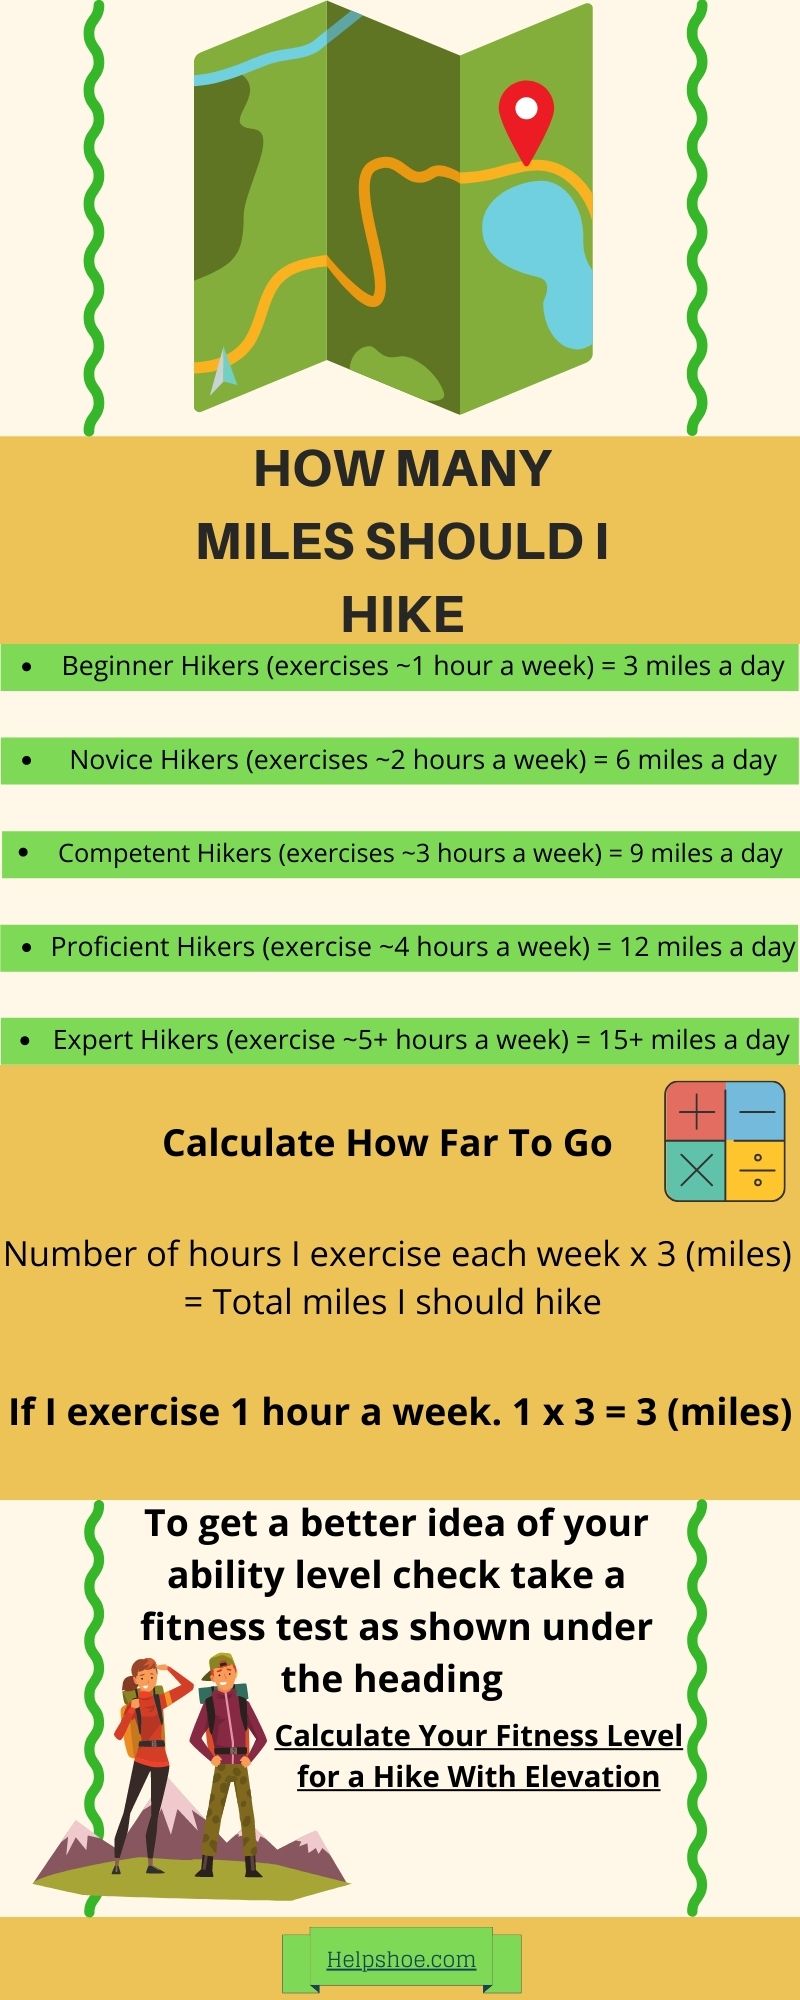 How mAny miles should I hike chart